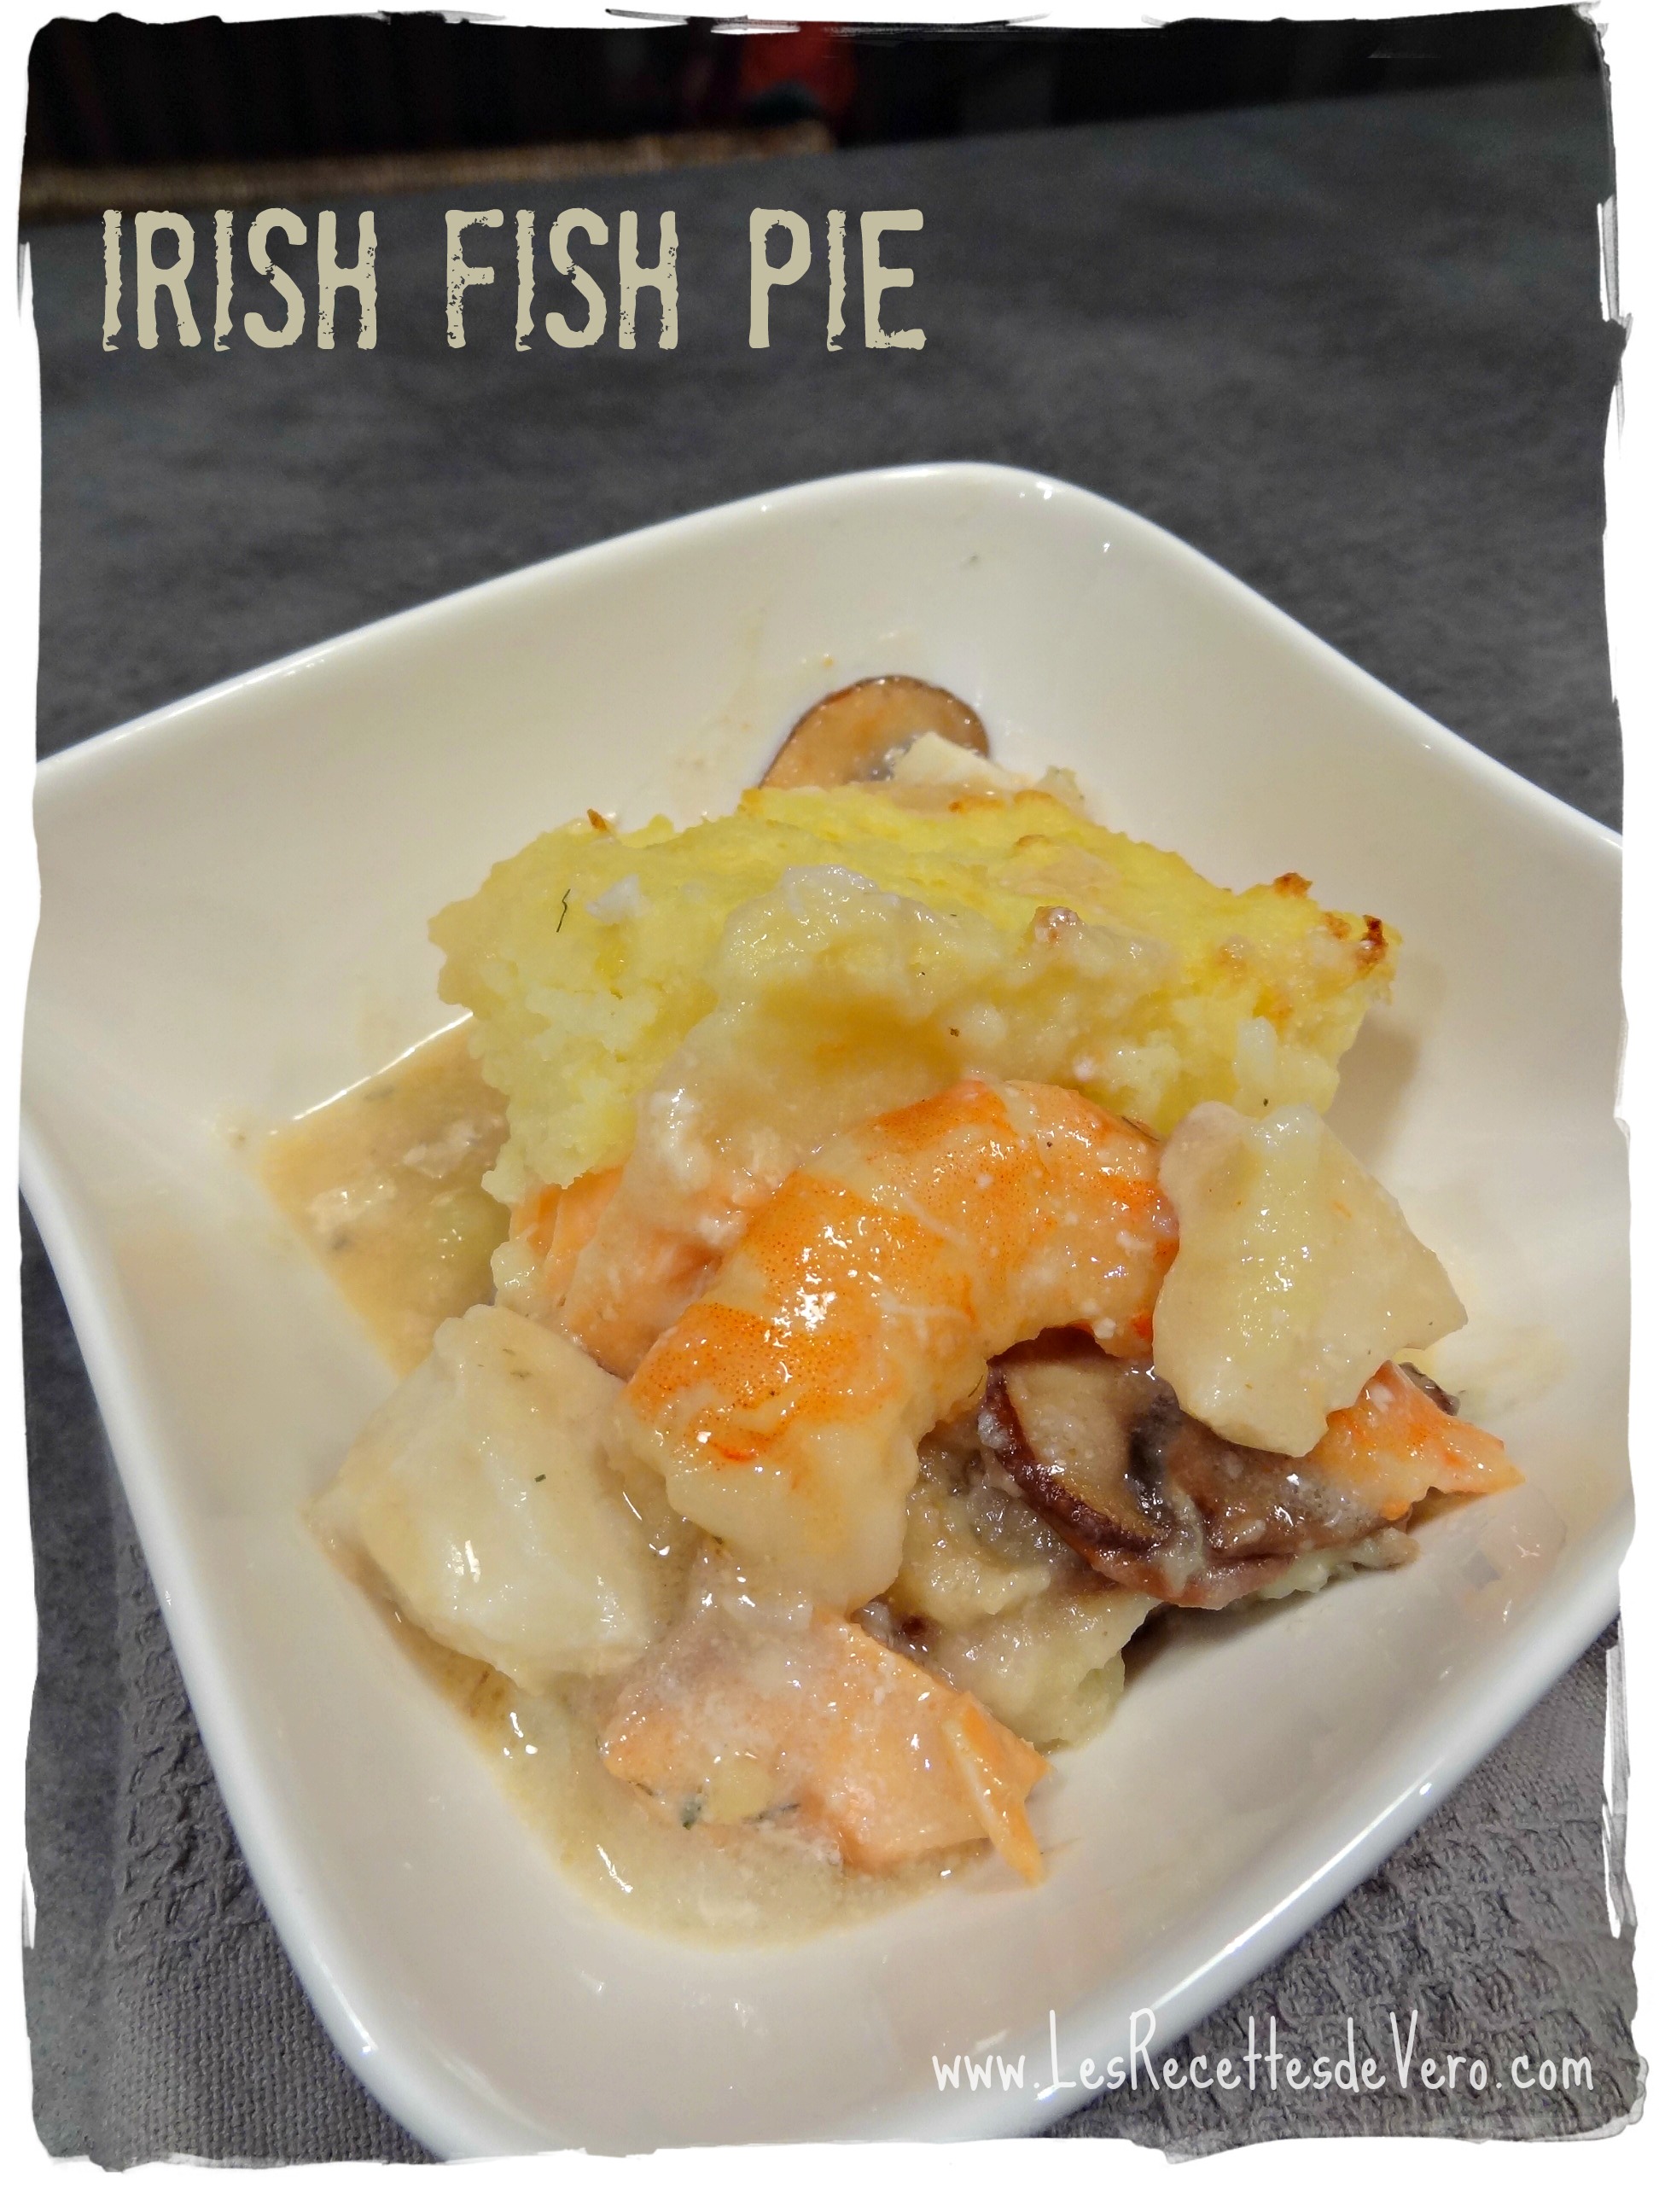 Irish fish pie